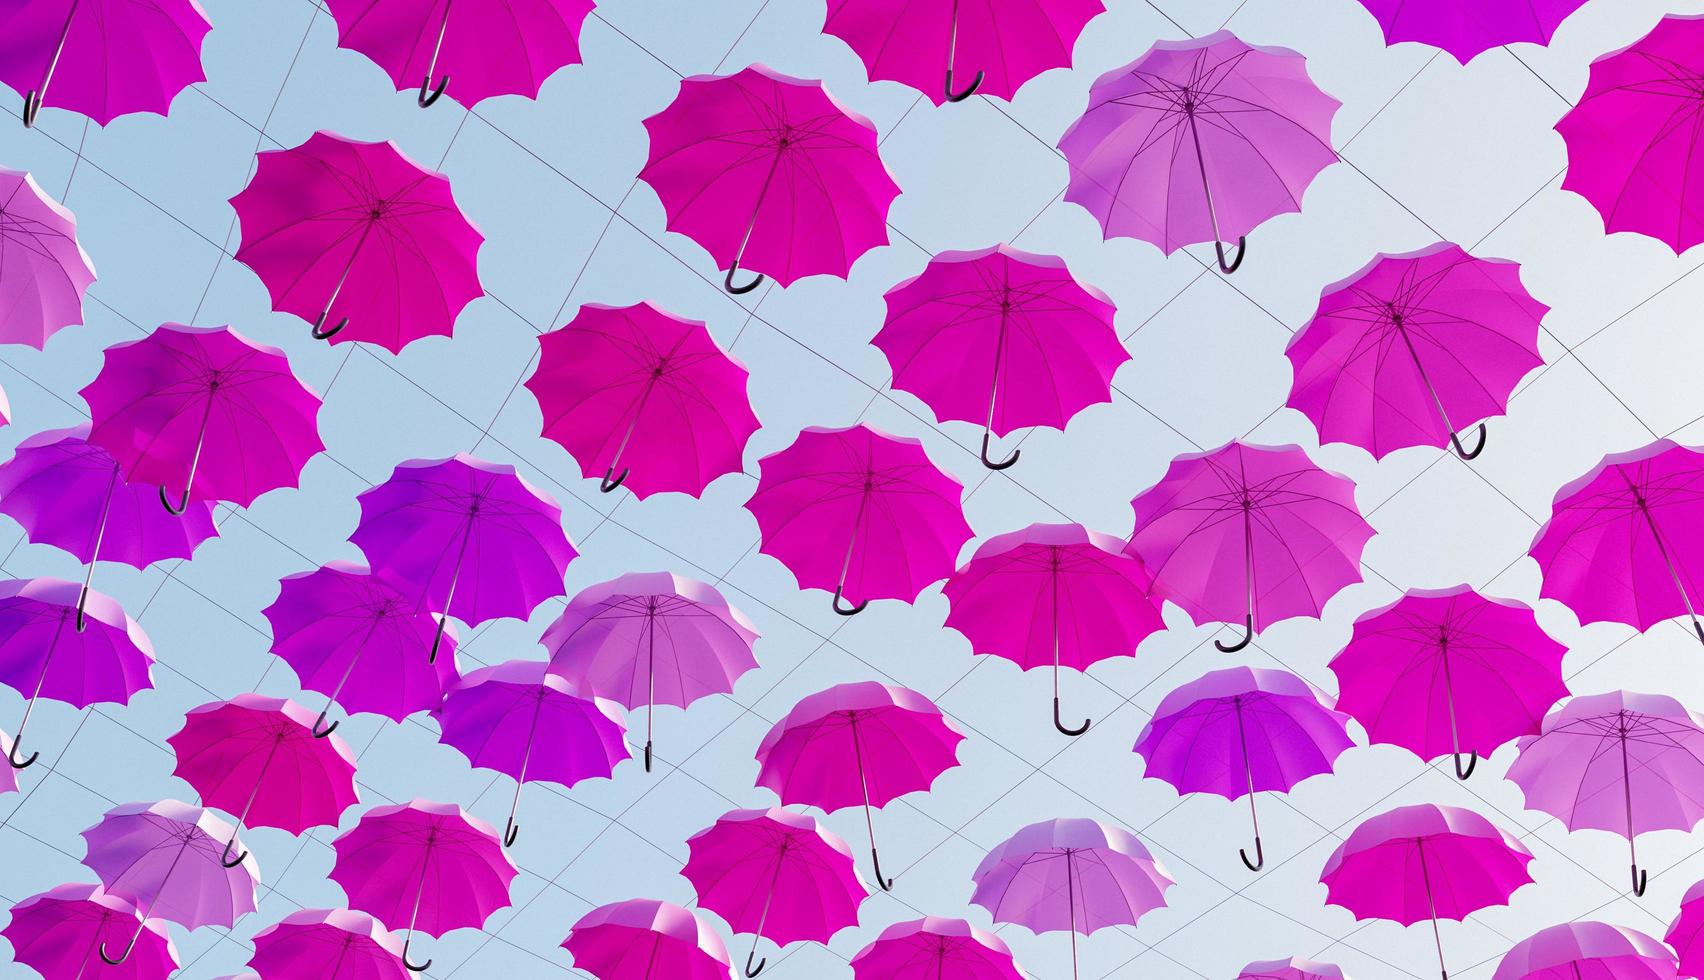 många rosa paraplyer som hänger på gatan med en solig himmel, 3d framför foto